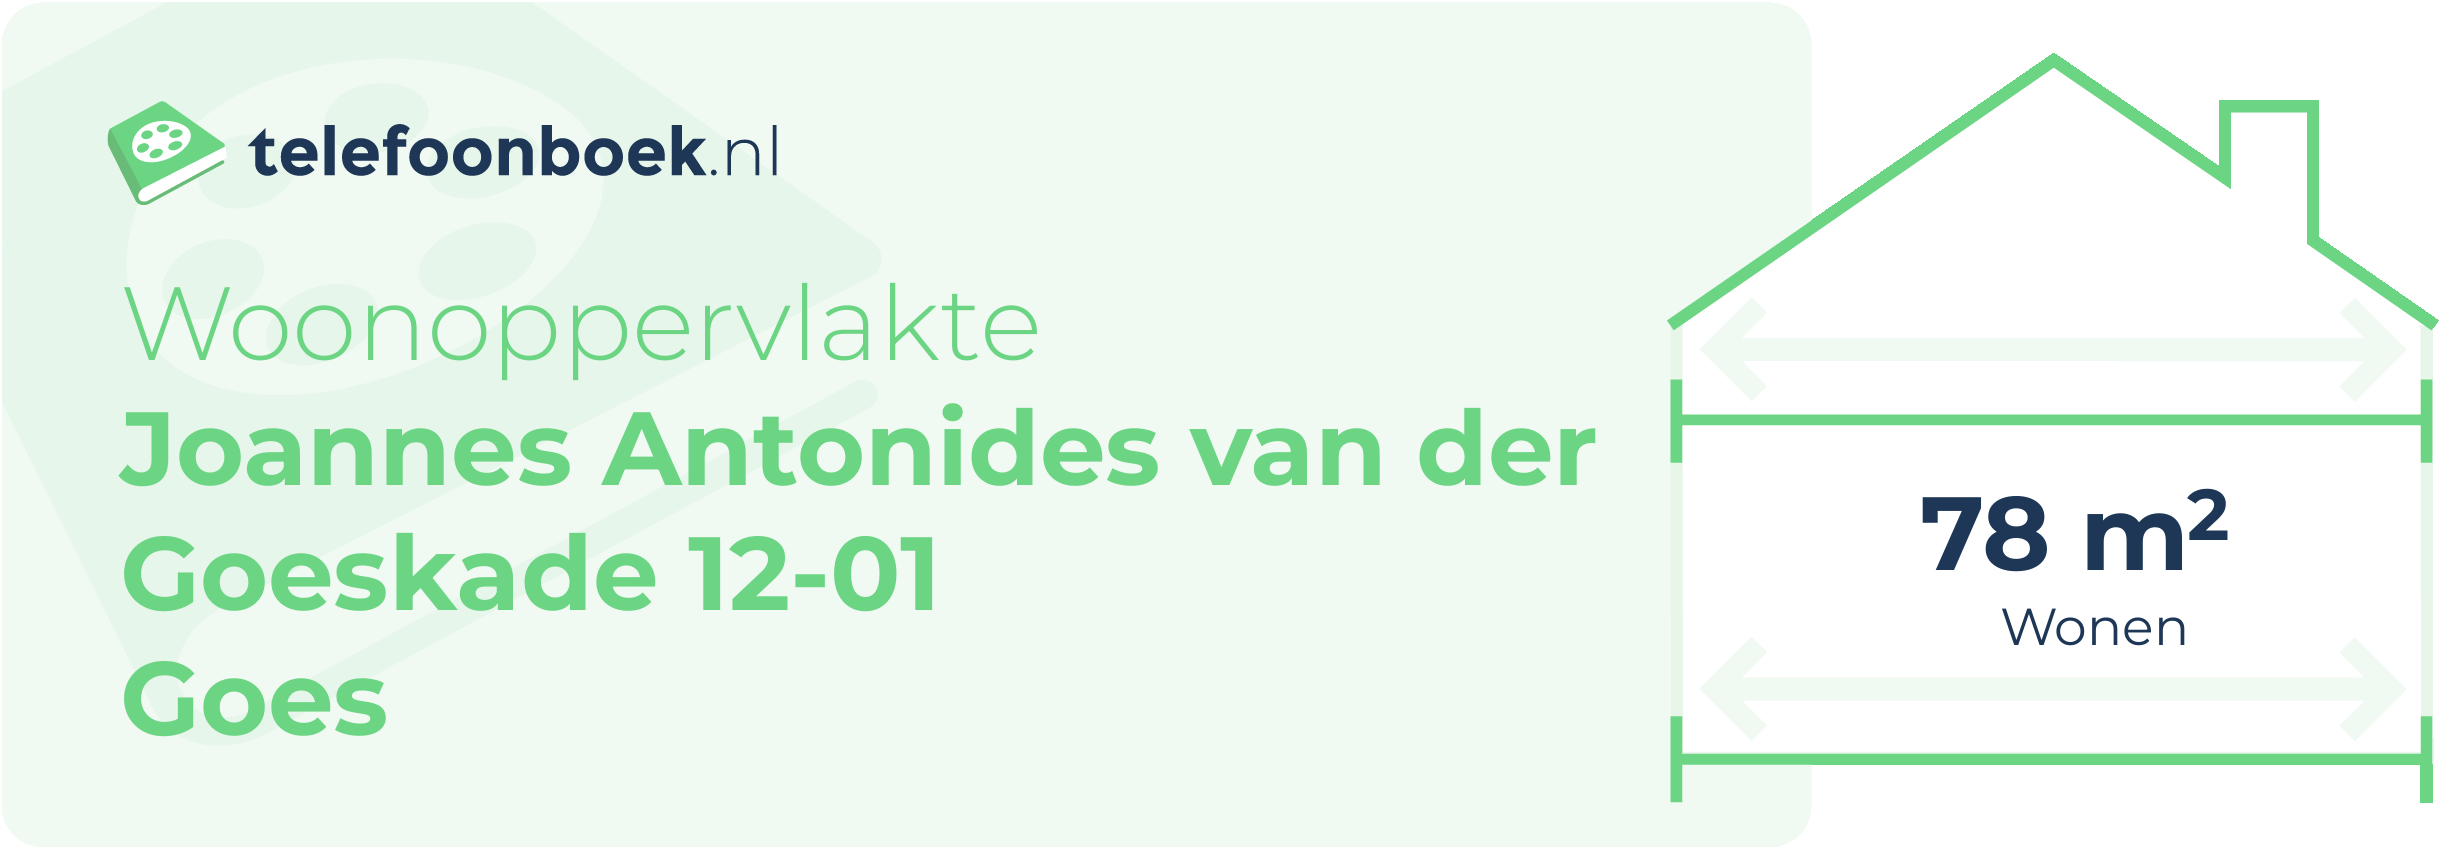 Woonoppervlakte Joannes Antonides Van Der Goeskade 12-01 Goes